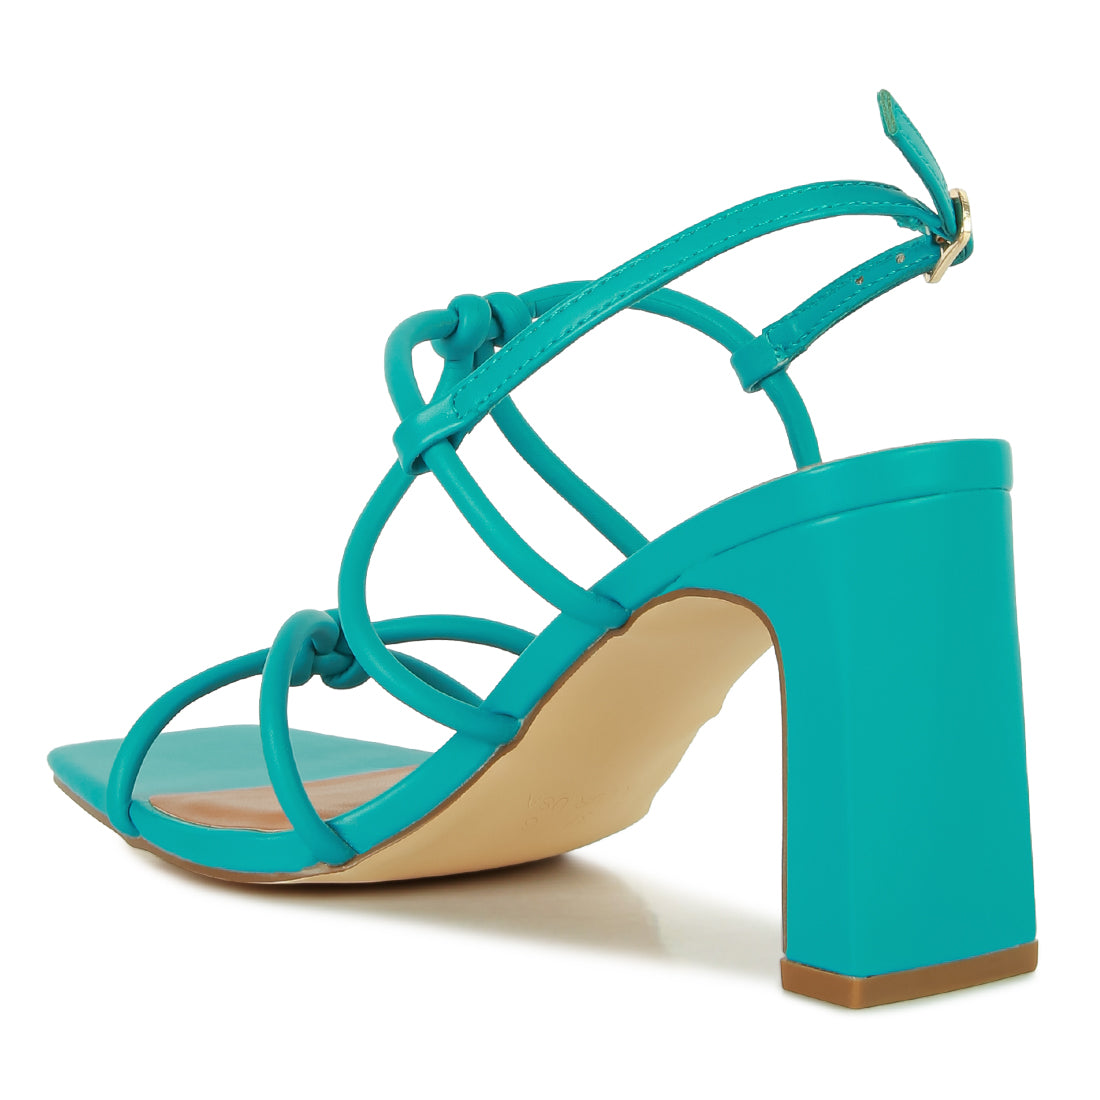 kralor knotted strap mid heel sandal#color_teal